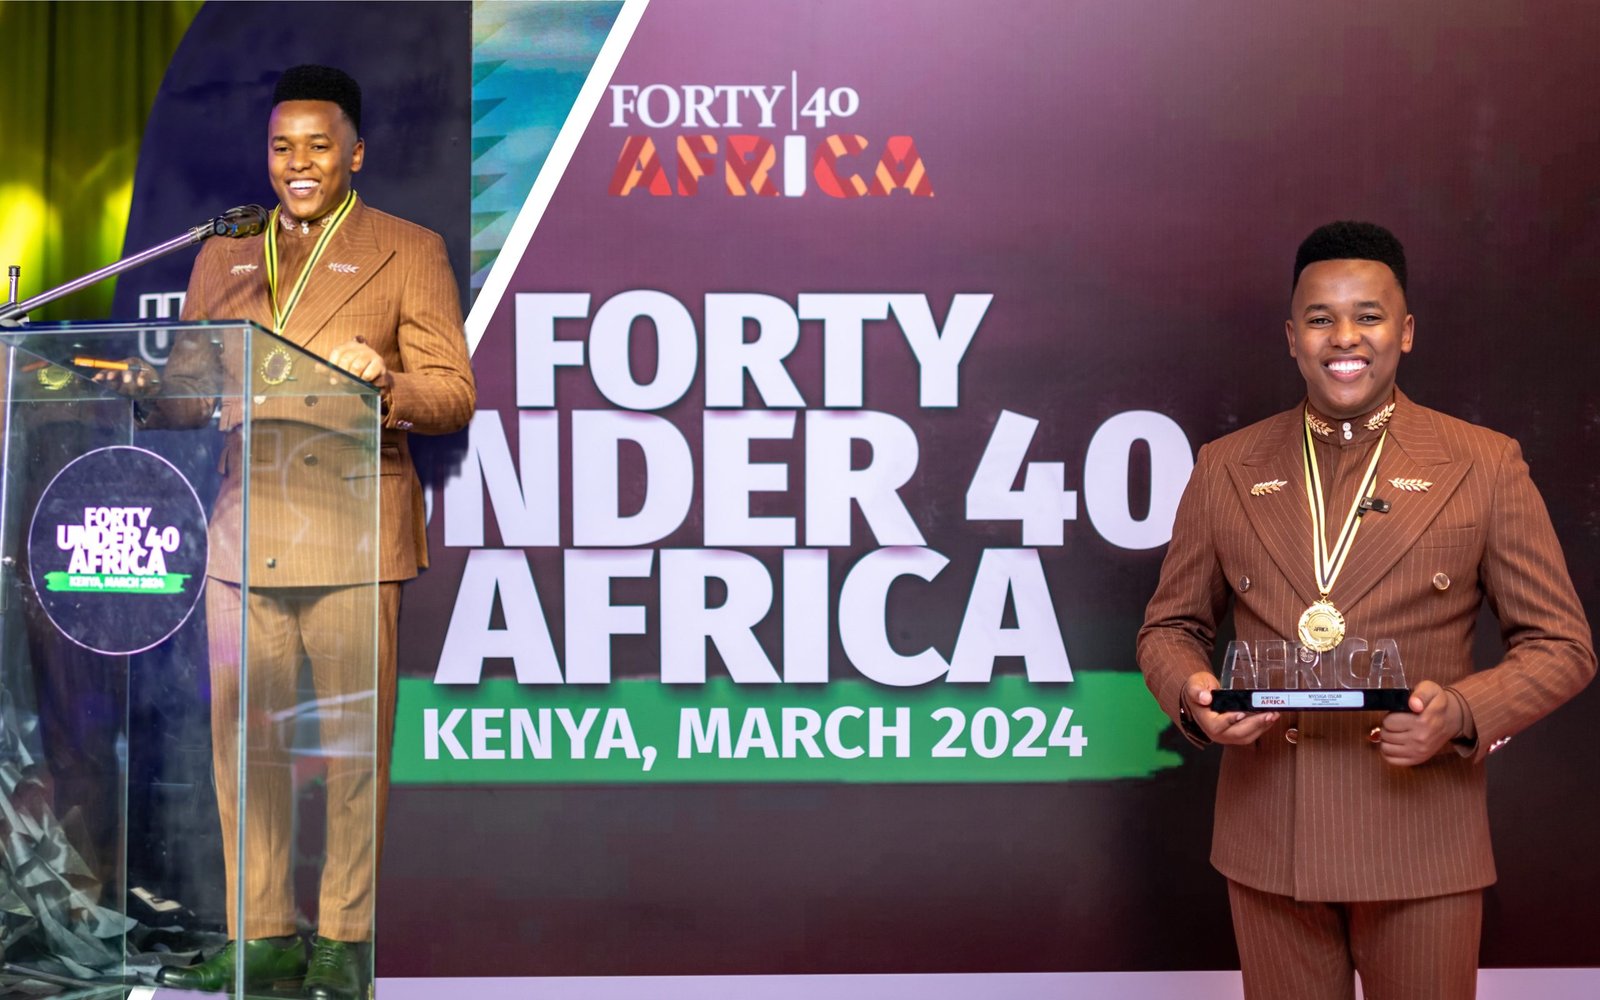 african-fashion-trailblazer-oscar-kampala-wins-coveted-forty-under-40-award